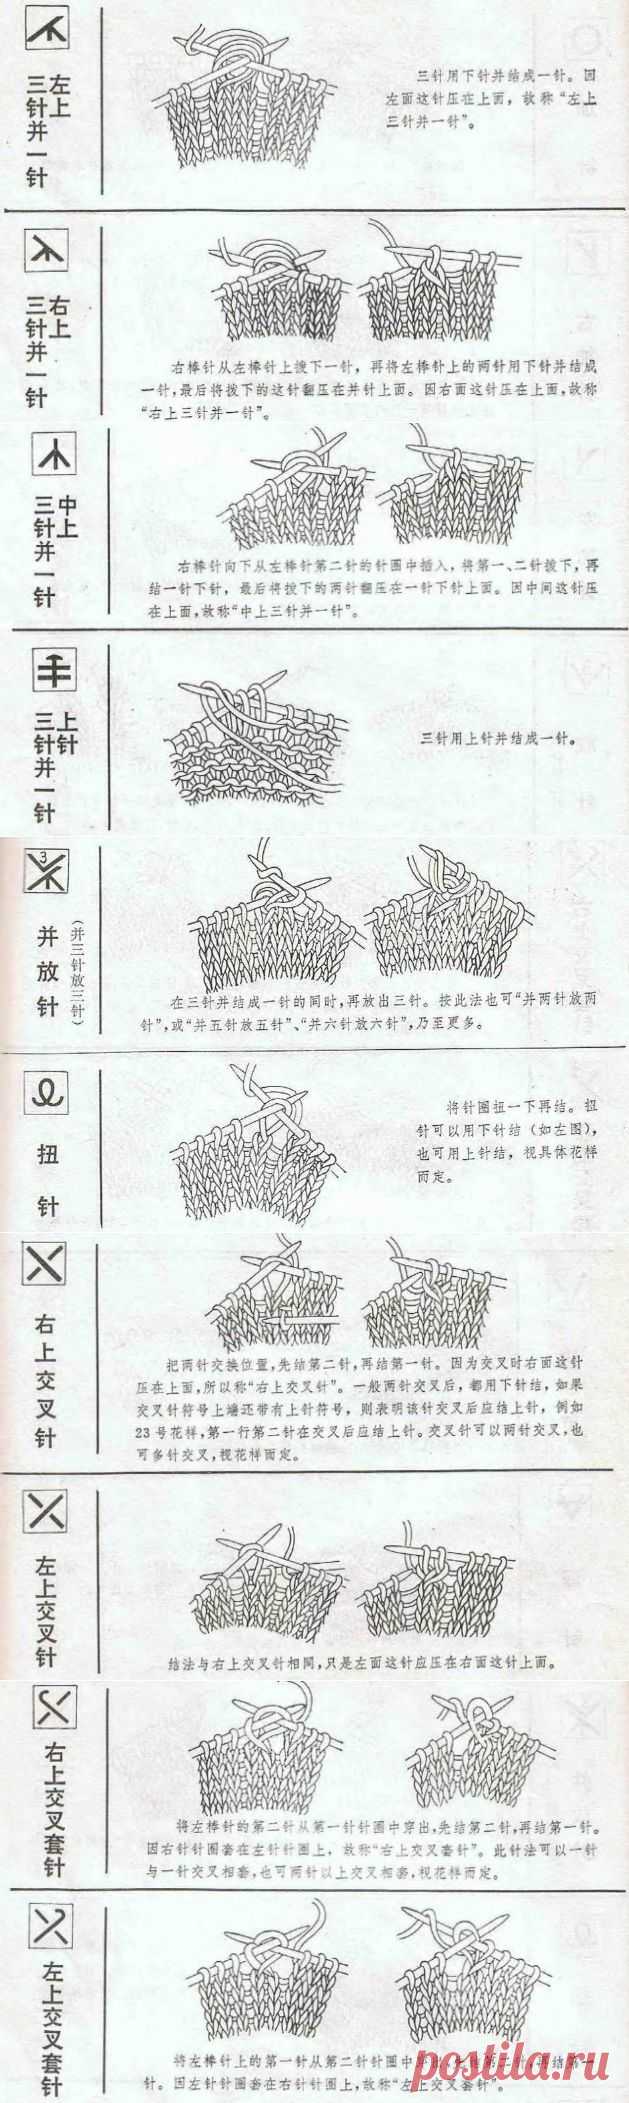 Условные обозначения в китайских и японских схемах (спицы).